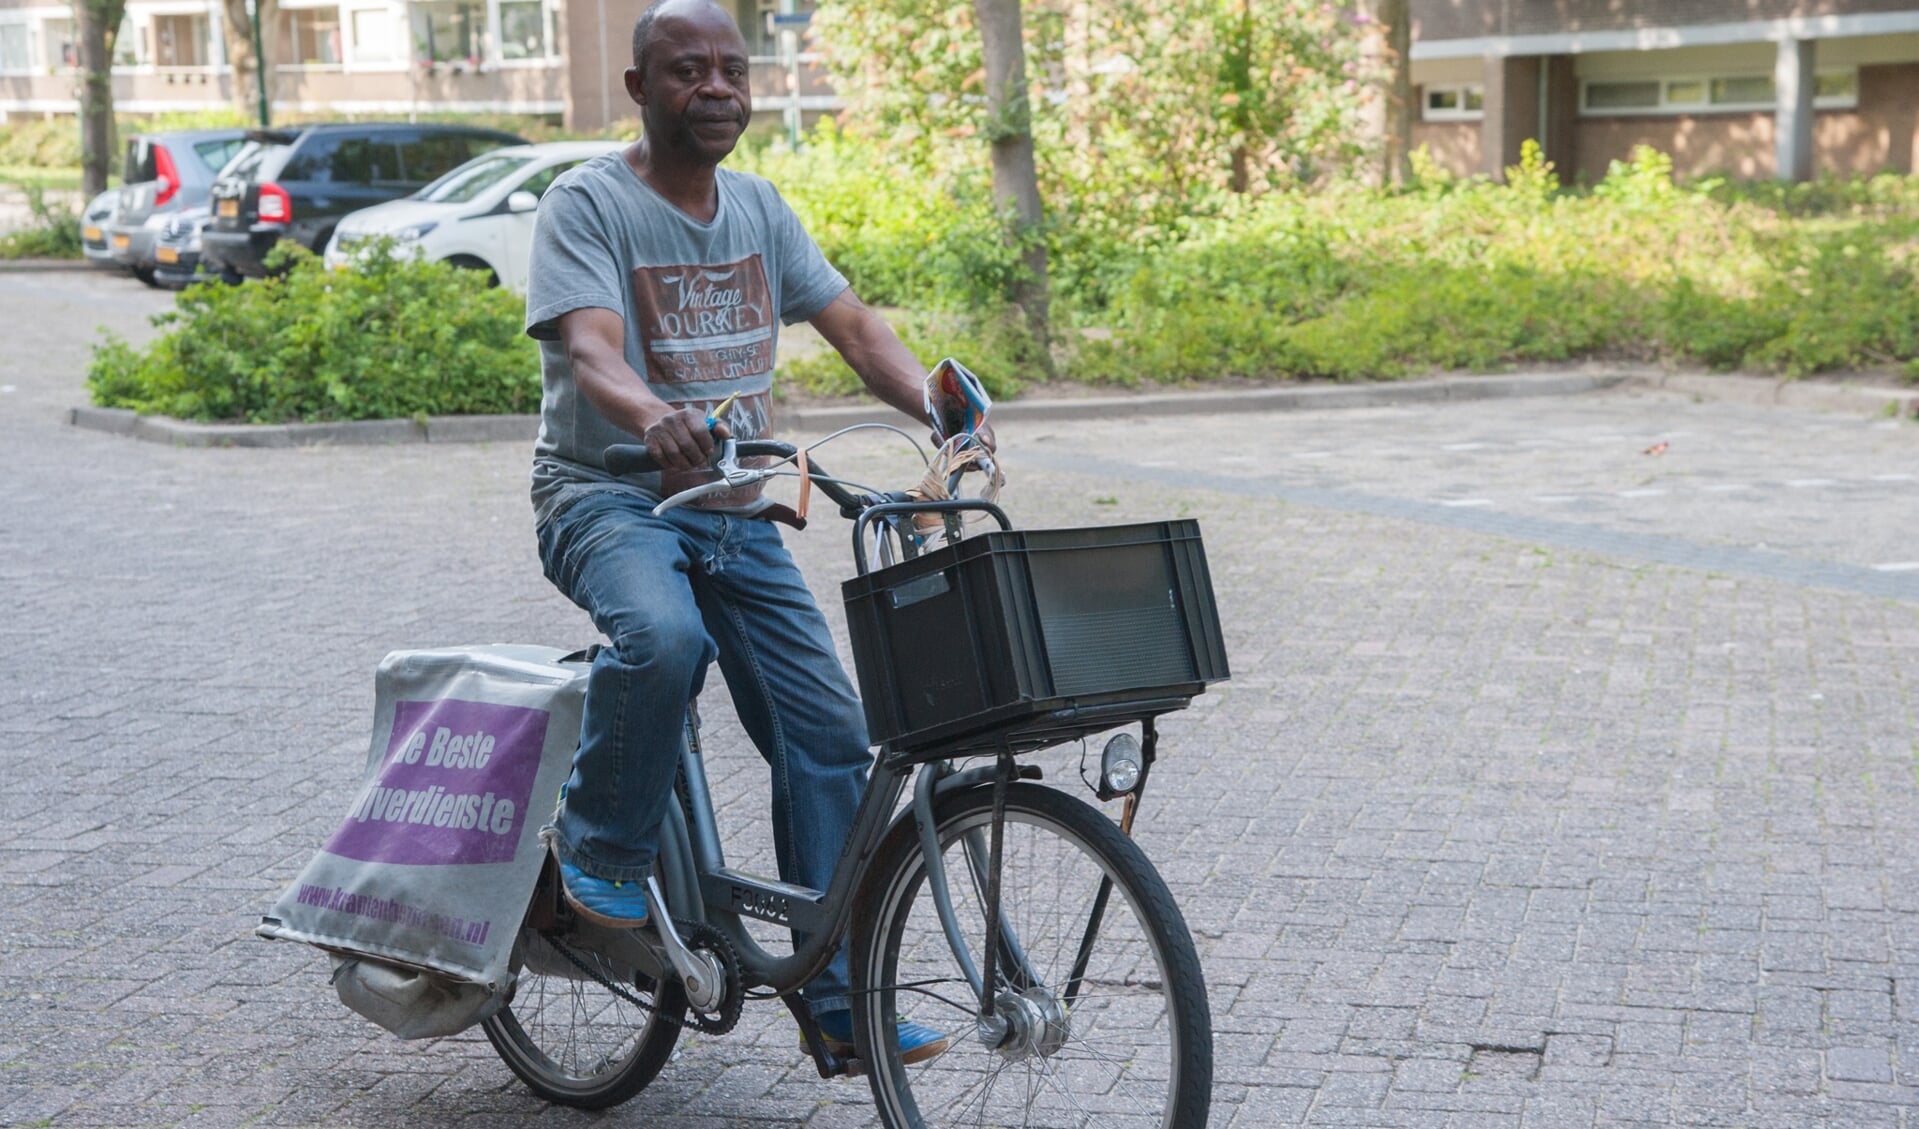 Tony Mavinda stapt bijna elke dag op de fiets om vrijwel overal in Soest folders, kranten en post te bezorgen.